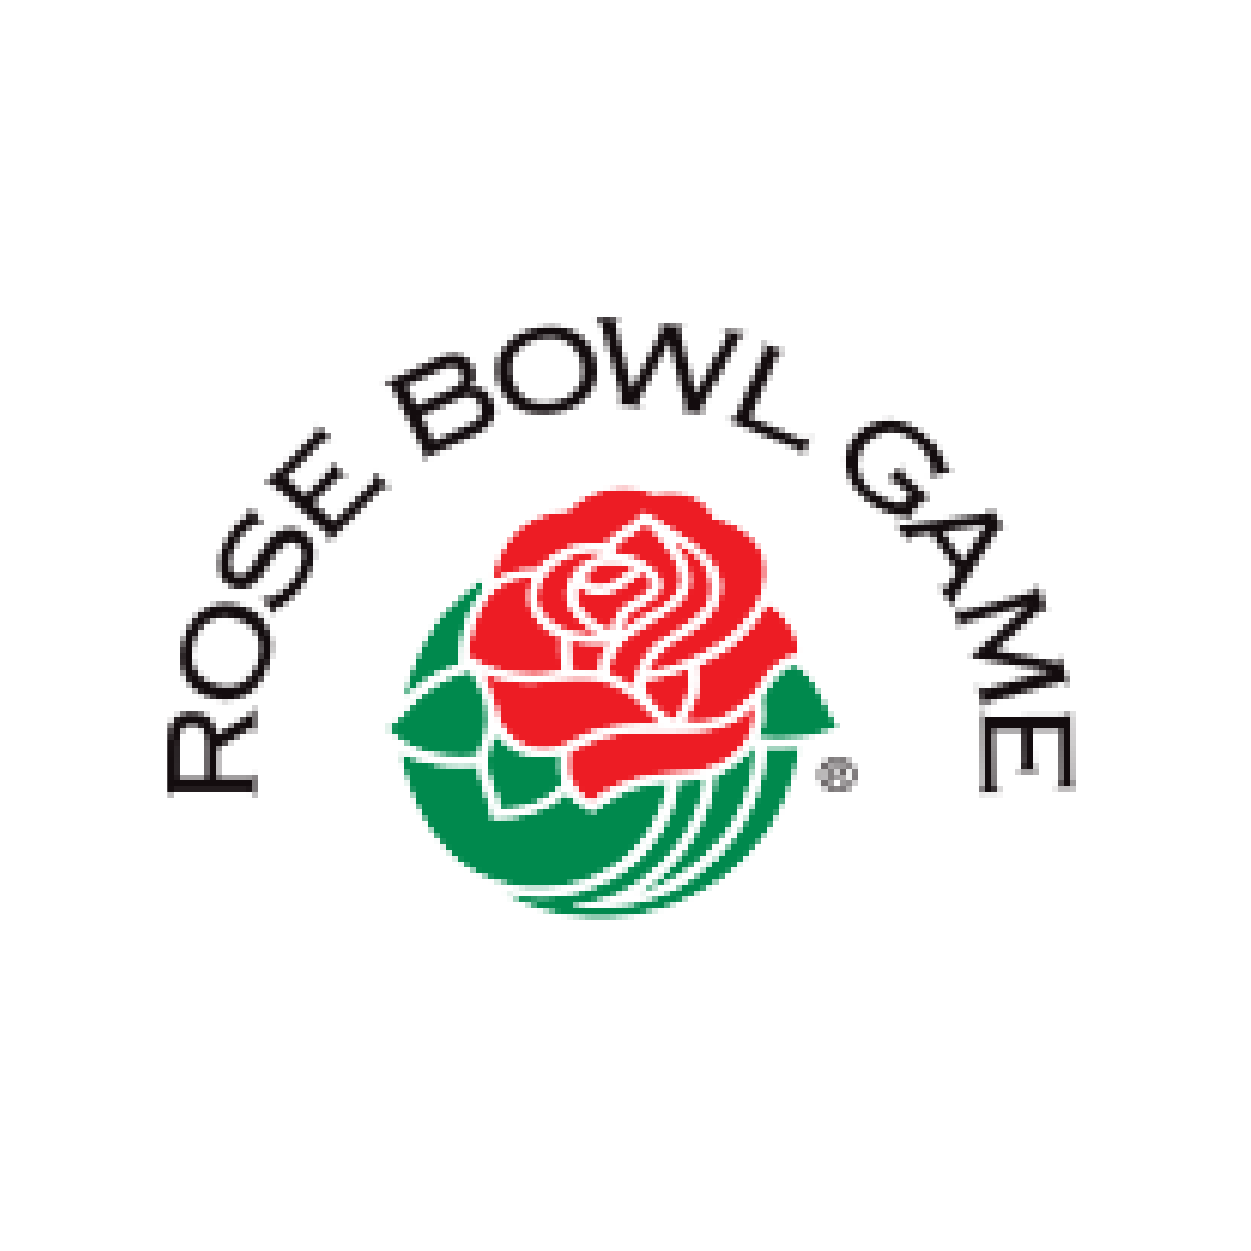 Rose bowl logo